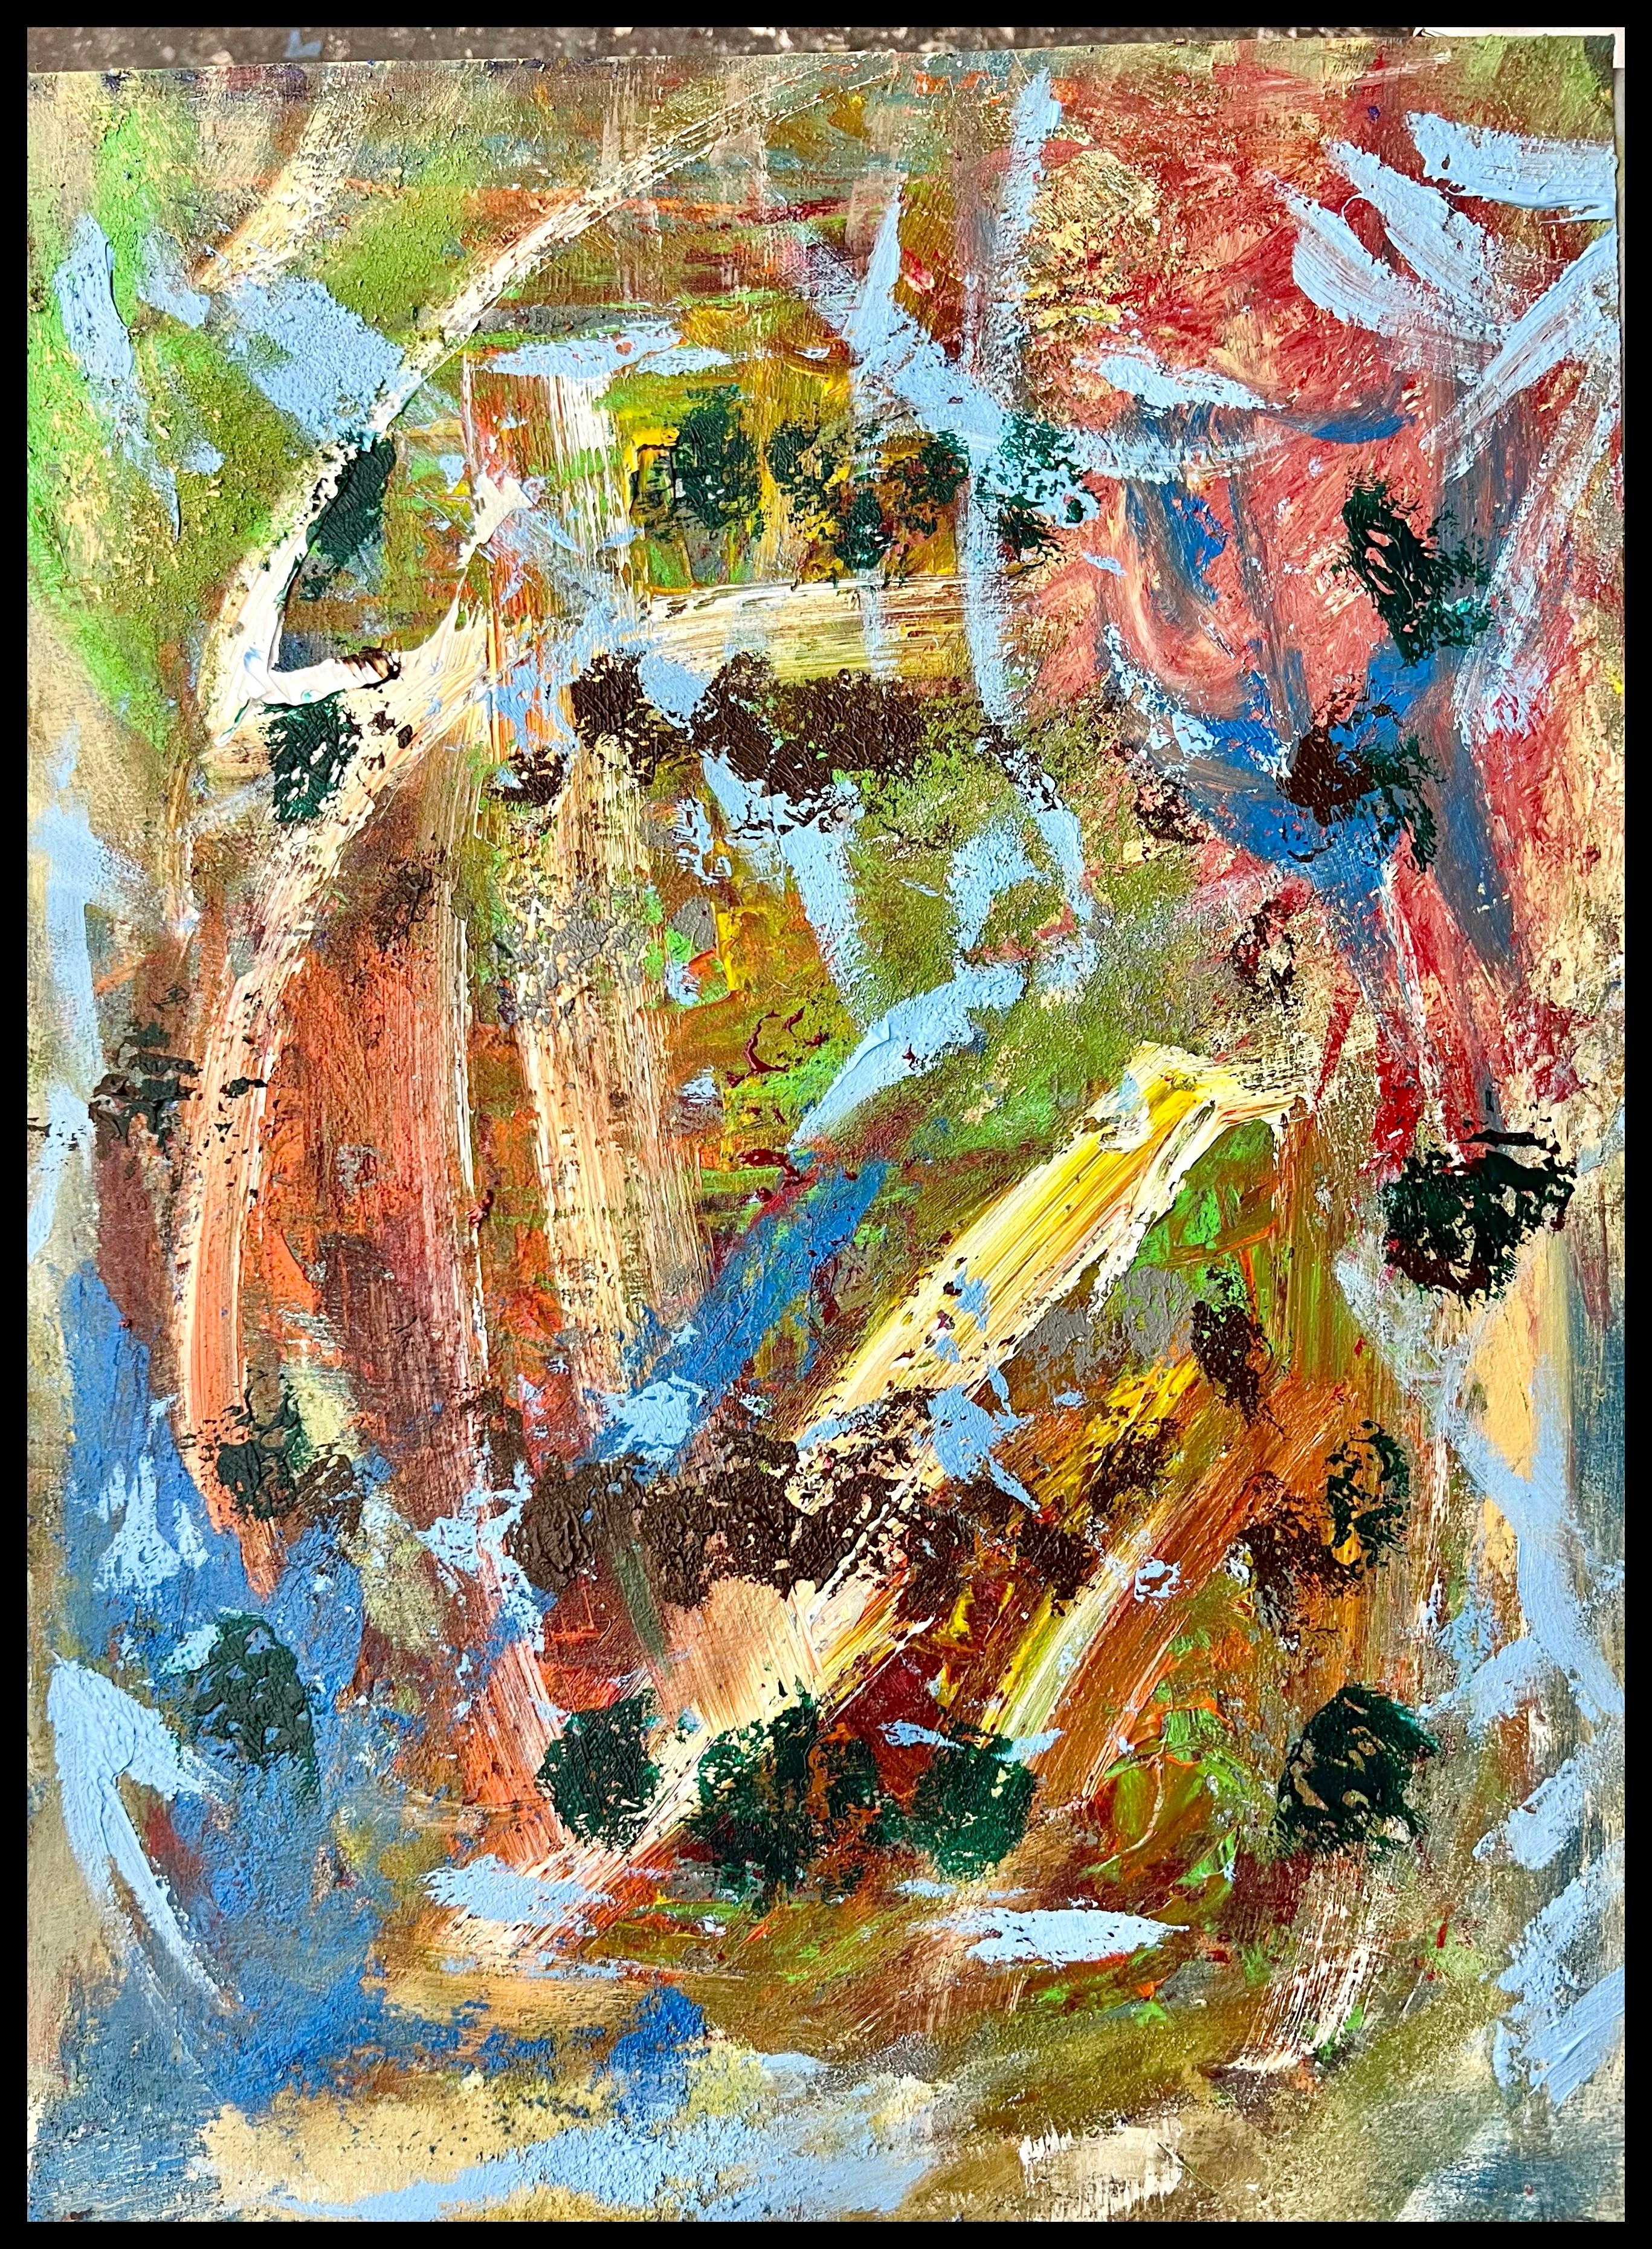 Cicadas par a.muse, peinture acrylique abstraite sur toile